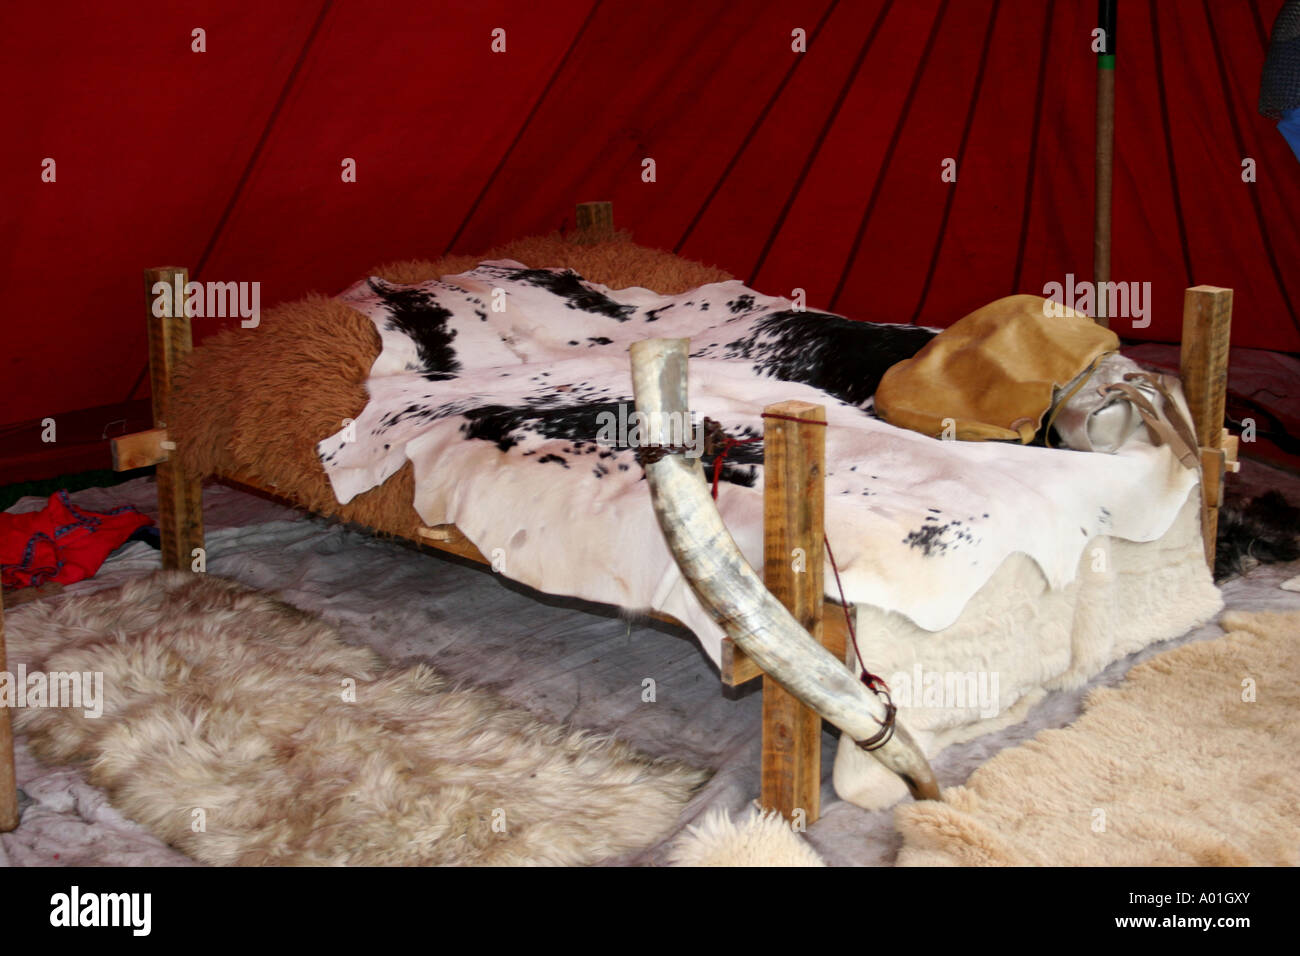 Un letto sassone trovato al rievocazione della battaglia di Hastings nel Regno Unito Foto Stock